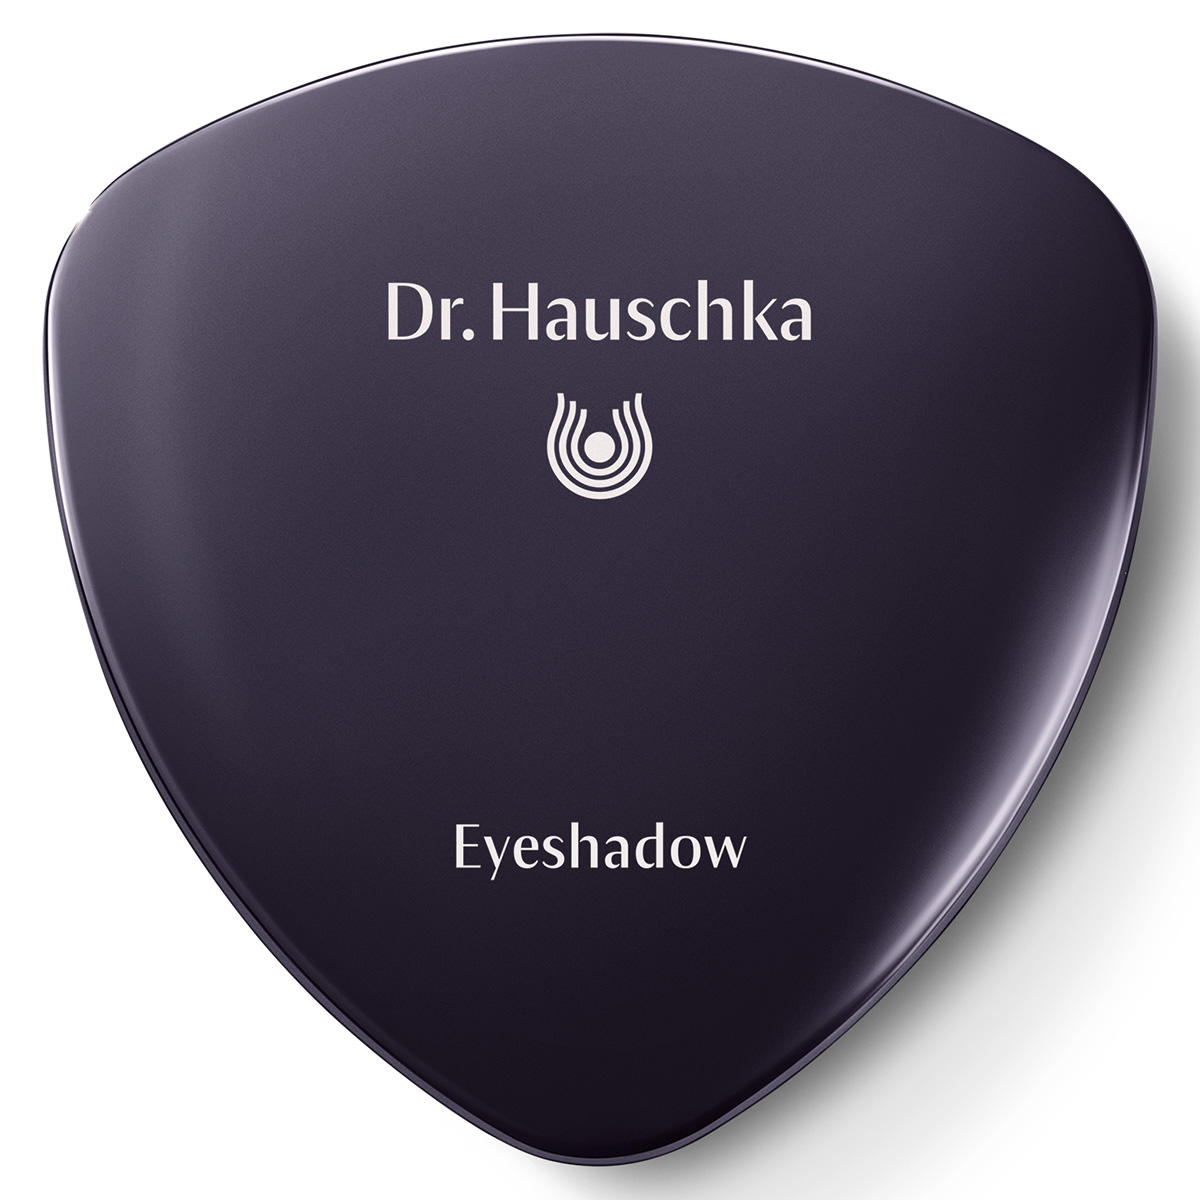 Dr. Hauschka Eyeshadow 04 verdélite, contenu 1,4 g - 2